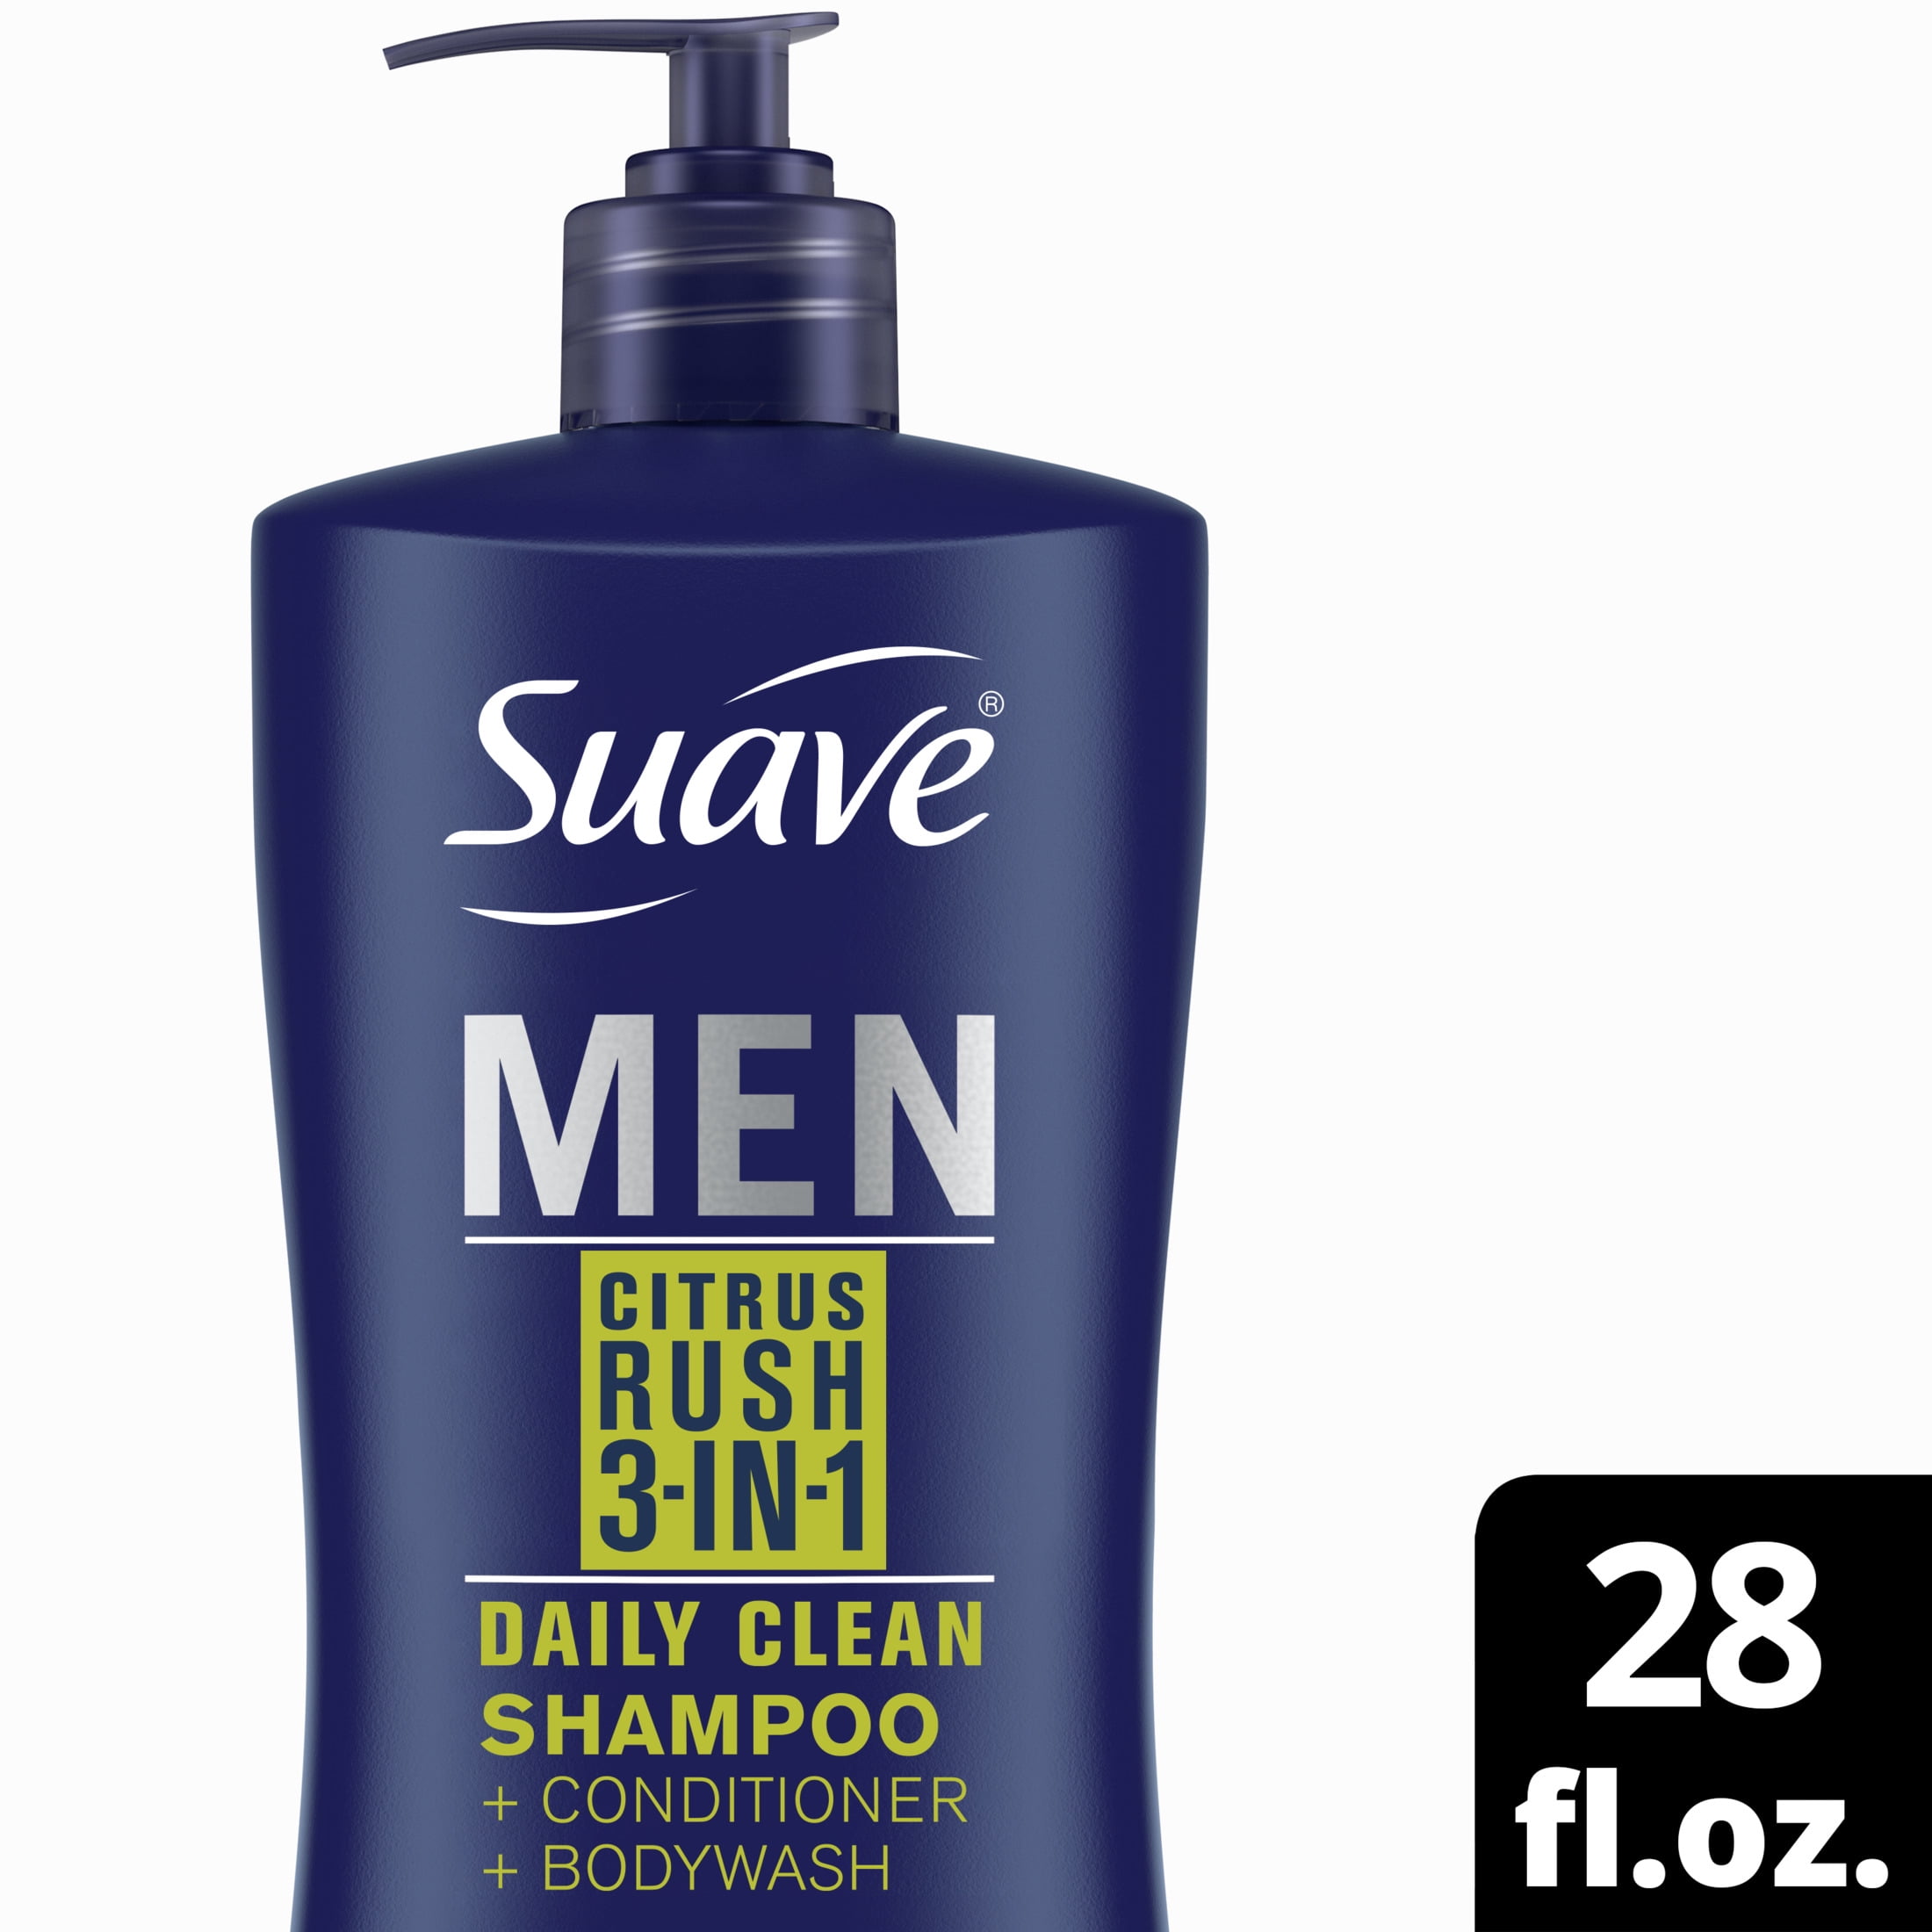 MEN's - Fragrance Free Shower Shave & Shampoo Bar (4.5 oz.)